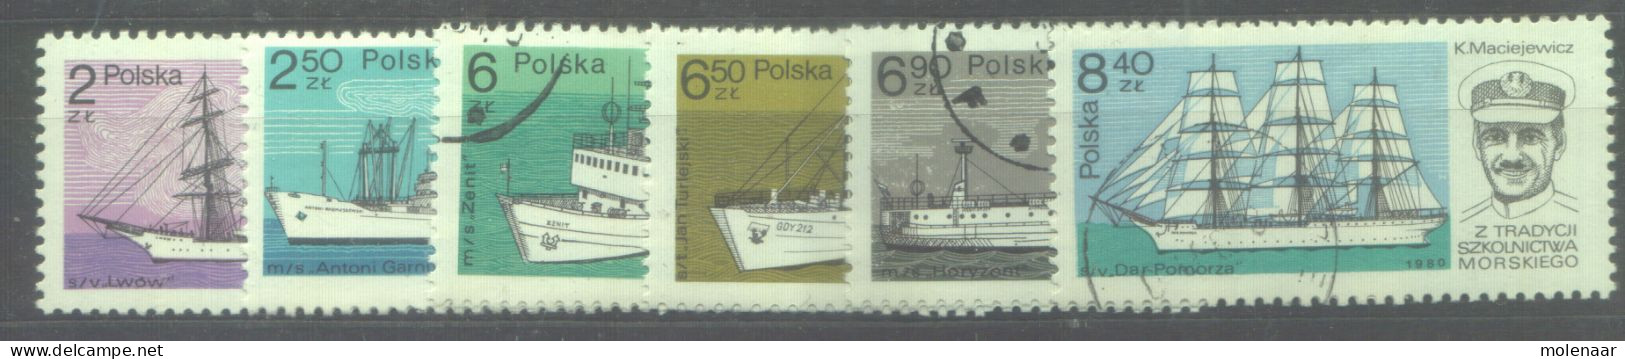 Postzegels > Europa > Polen > 1944-.... Republiek > 1981-90 > Gebruikt 2701-2706 (12187) - Oblitérés